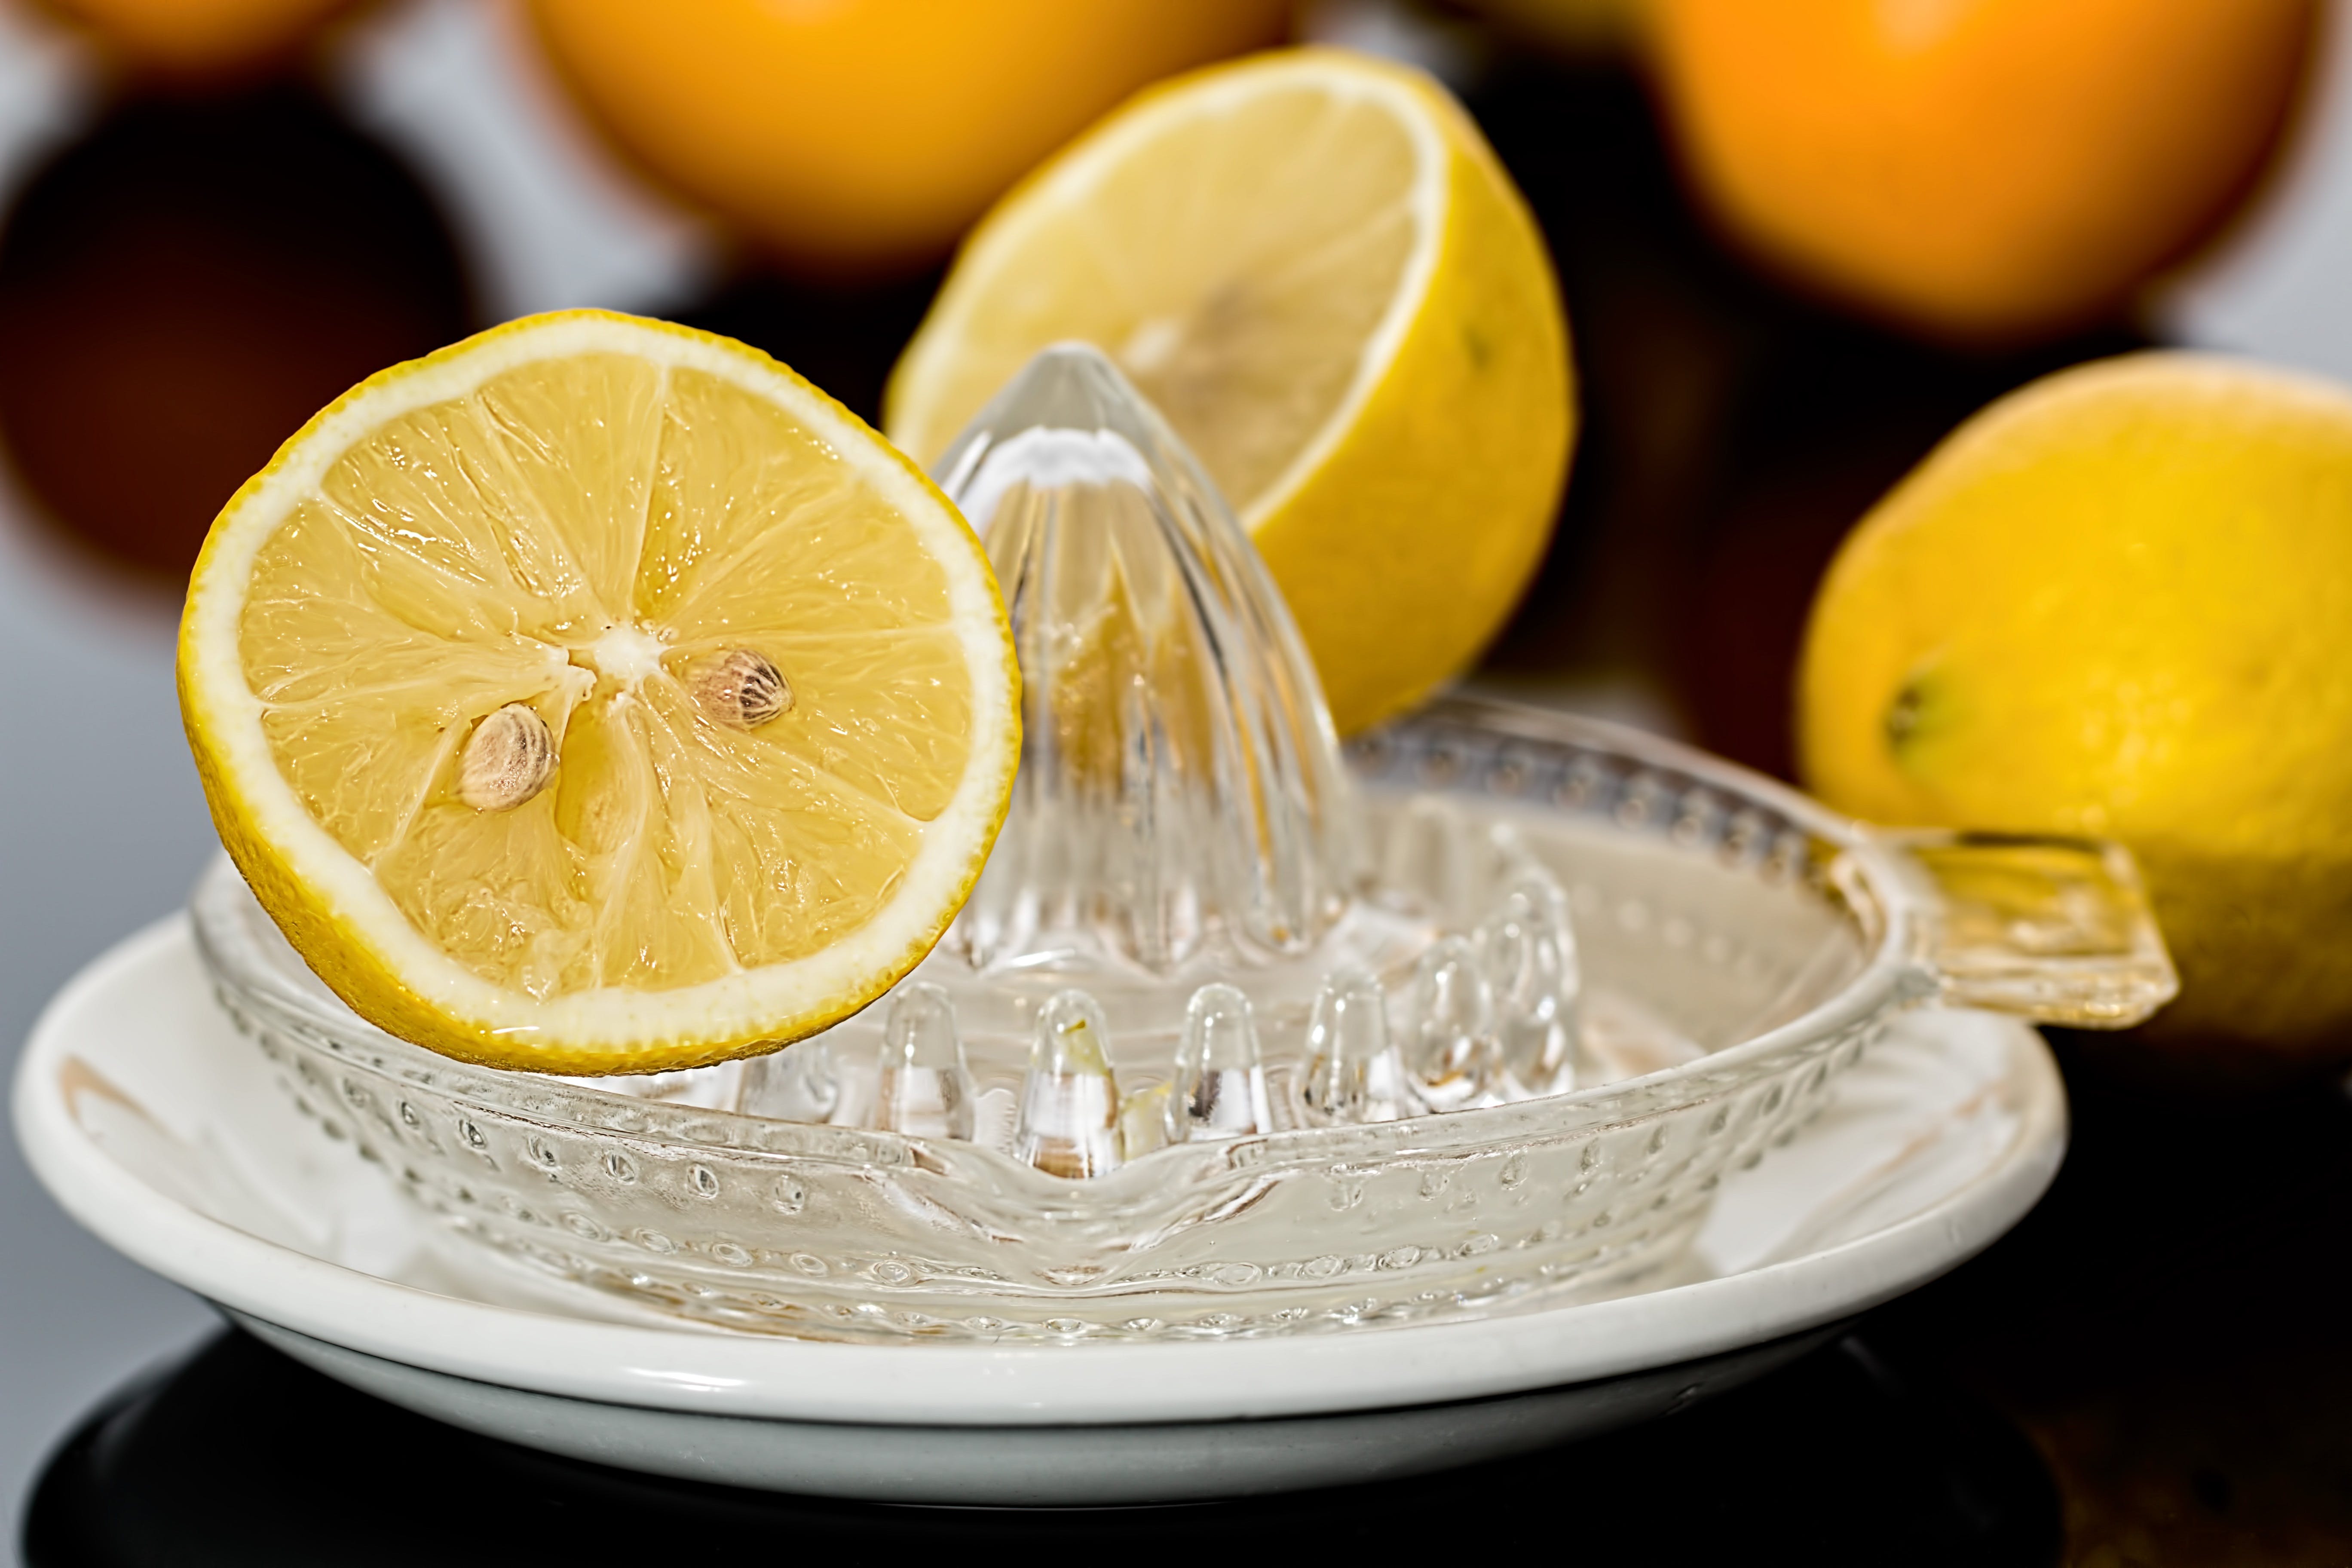 M-Soigner - Le citron, un concentré de bienfaits